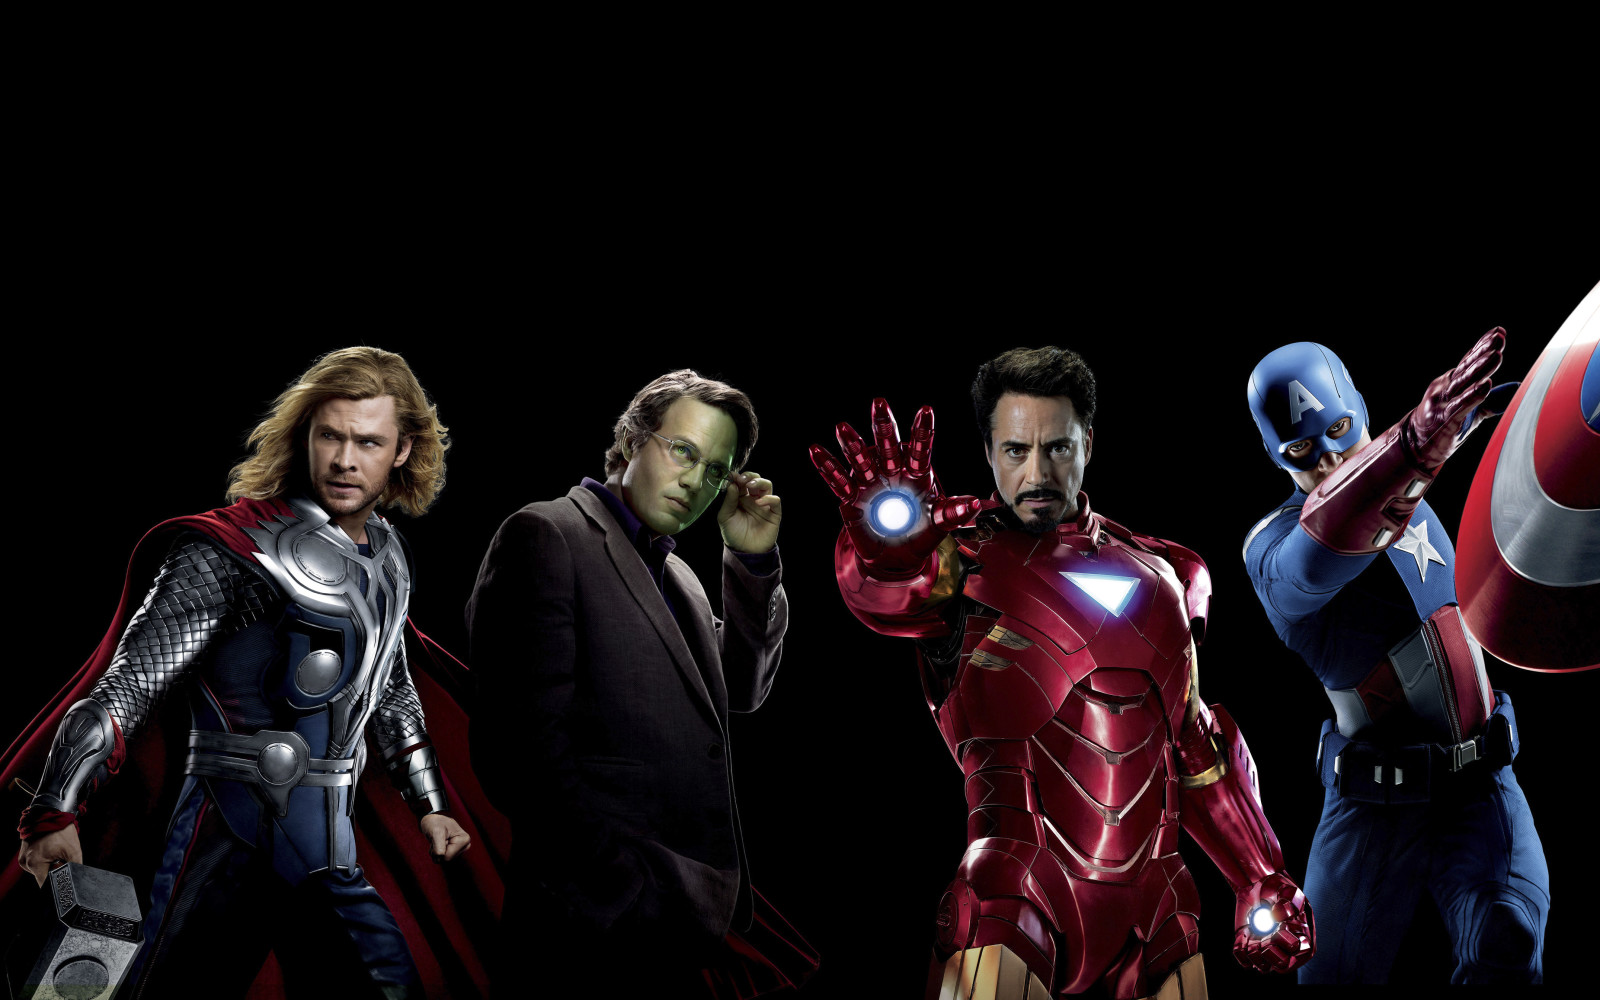 nền đen, kỳ quan, Viễn tưởng, Các siêu anh hùng, Thần sấm, Đội trưởng Mỹ, Chris Hemsworth, Chris Evans